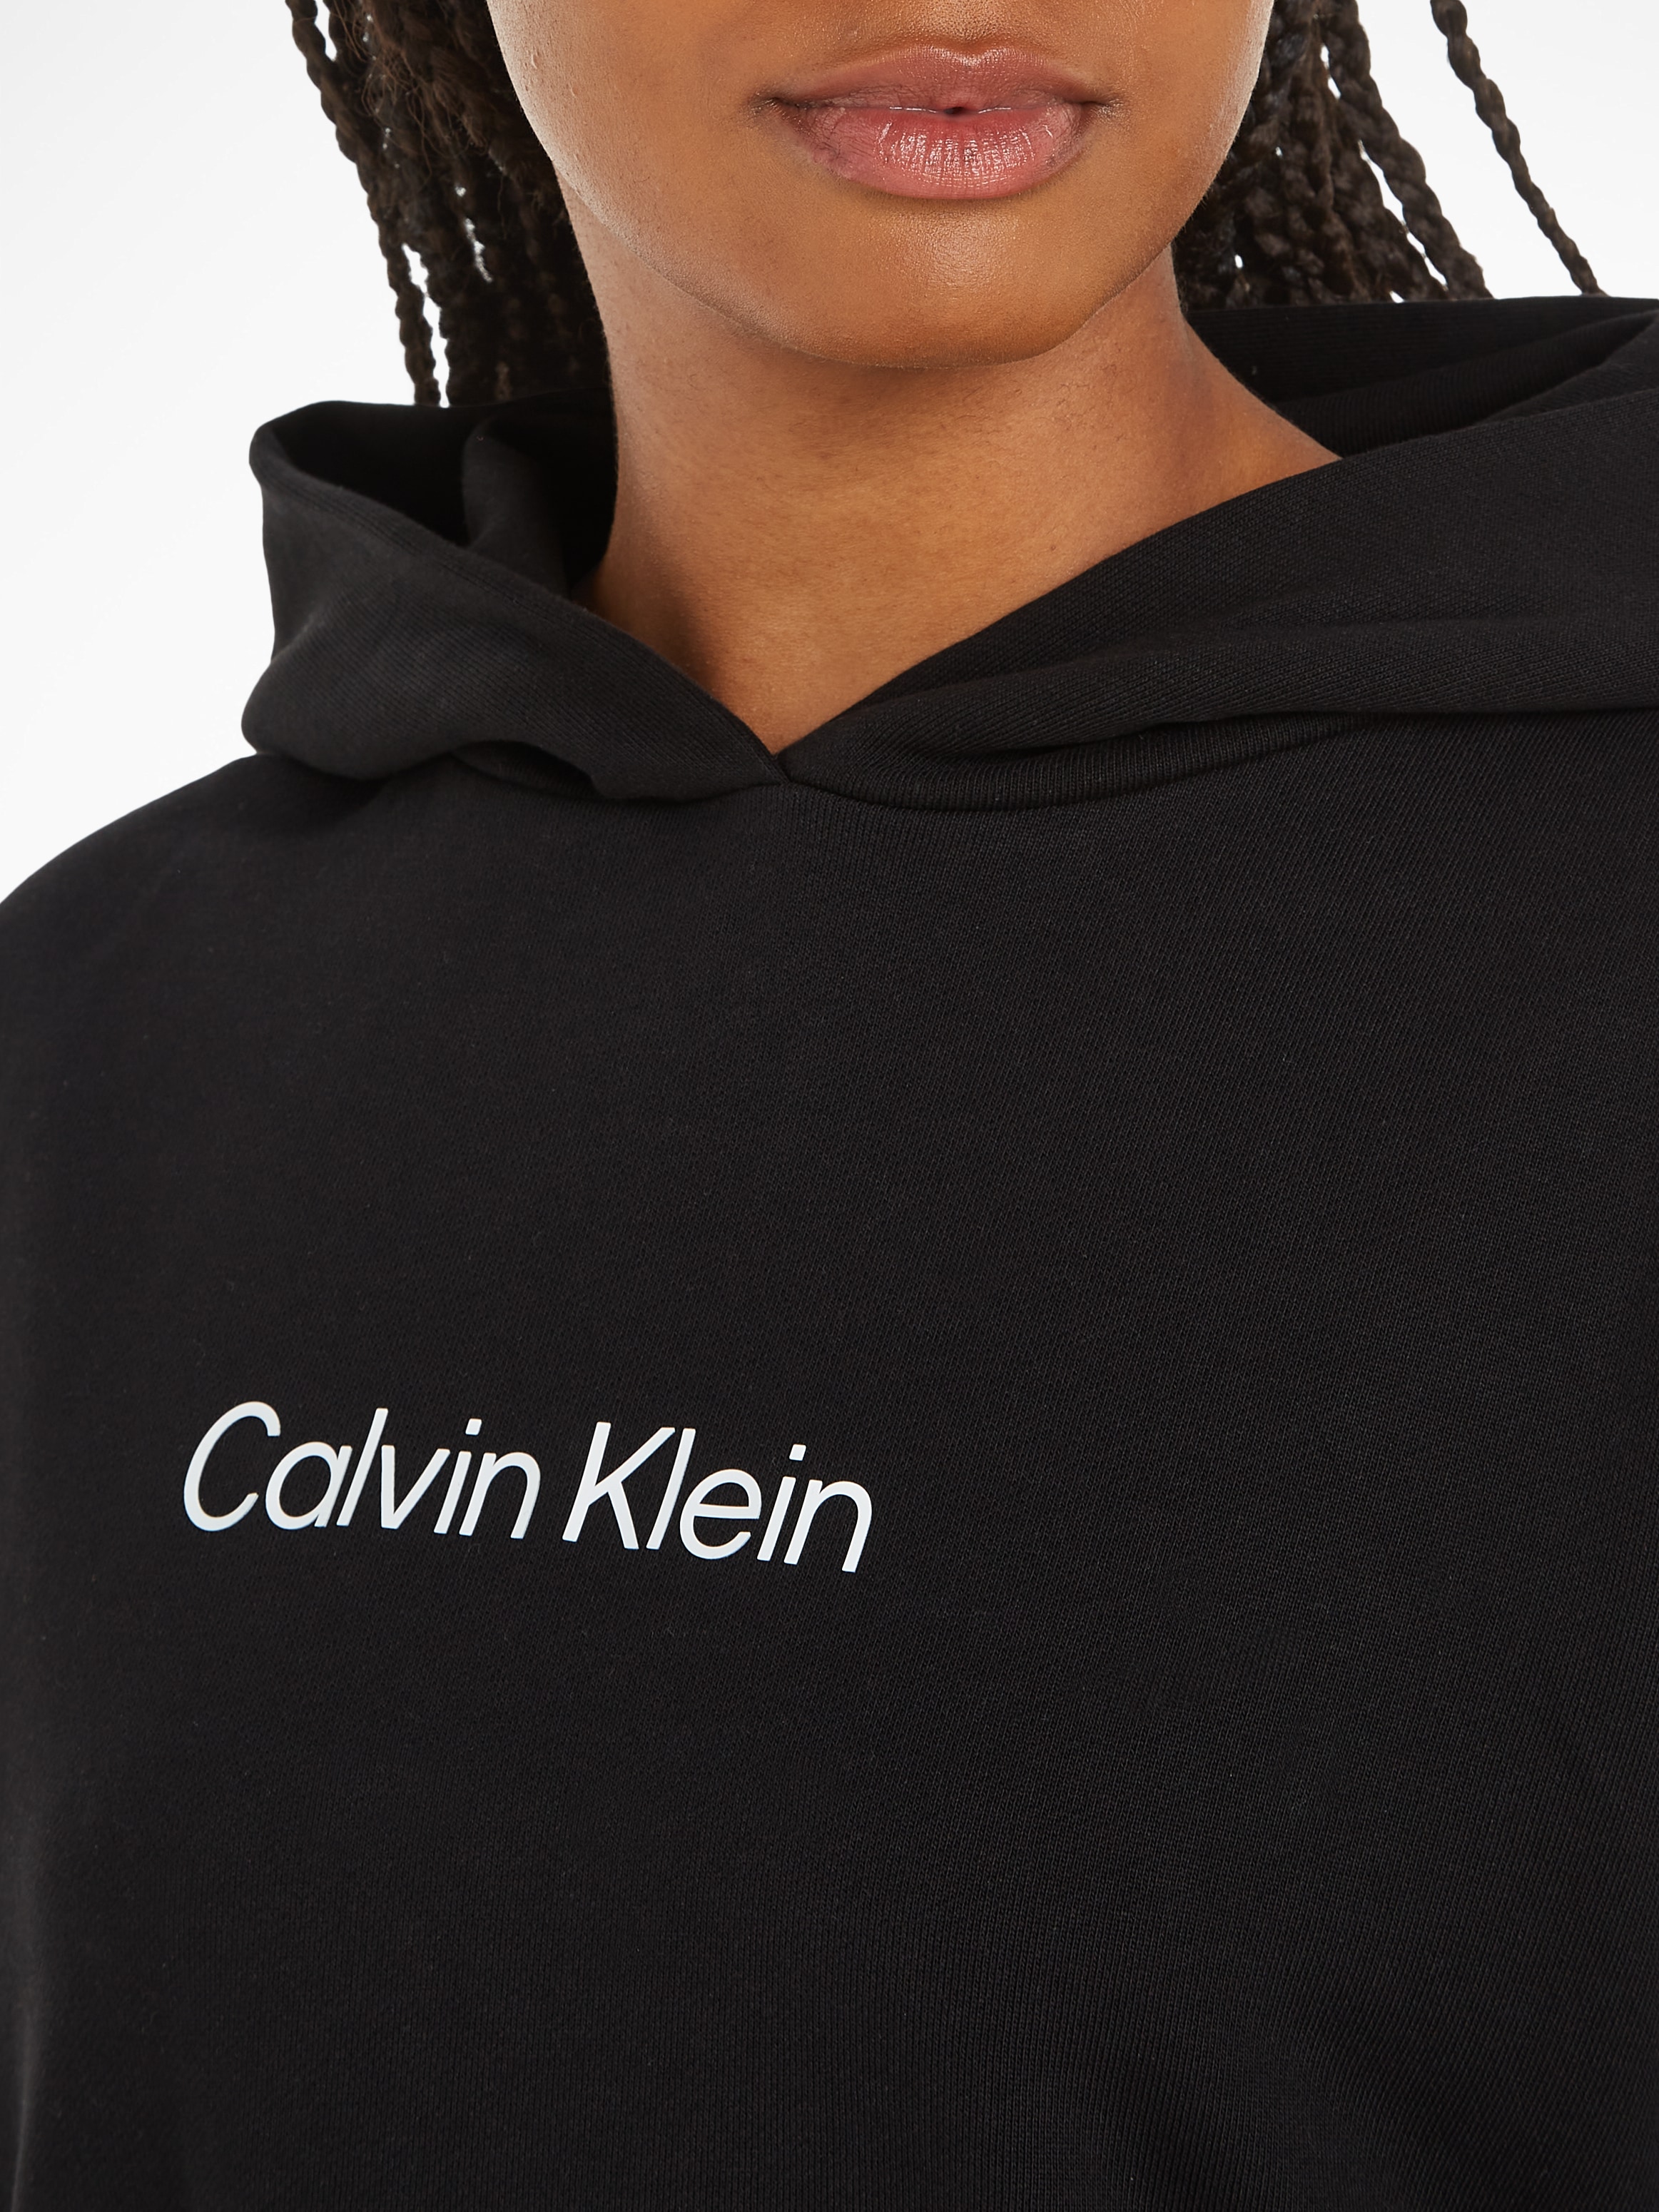 | DRESS« HOODIE walking I\'m Sweatkleid LOGO Calvin Klein online »HERO kaufen